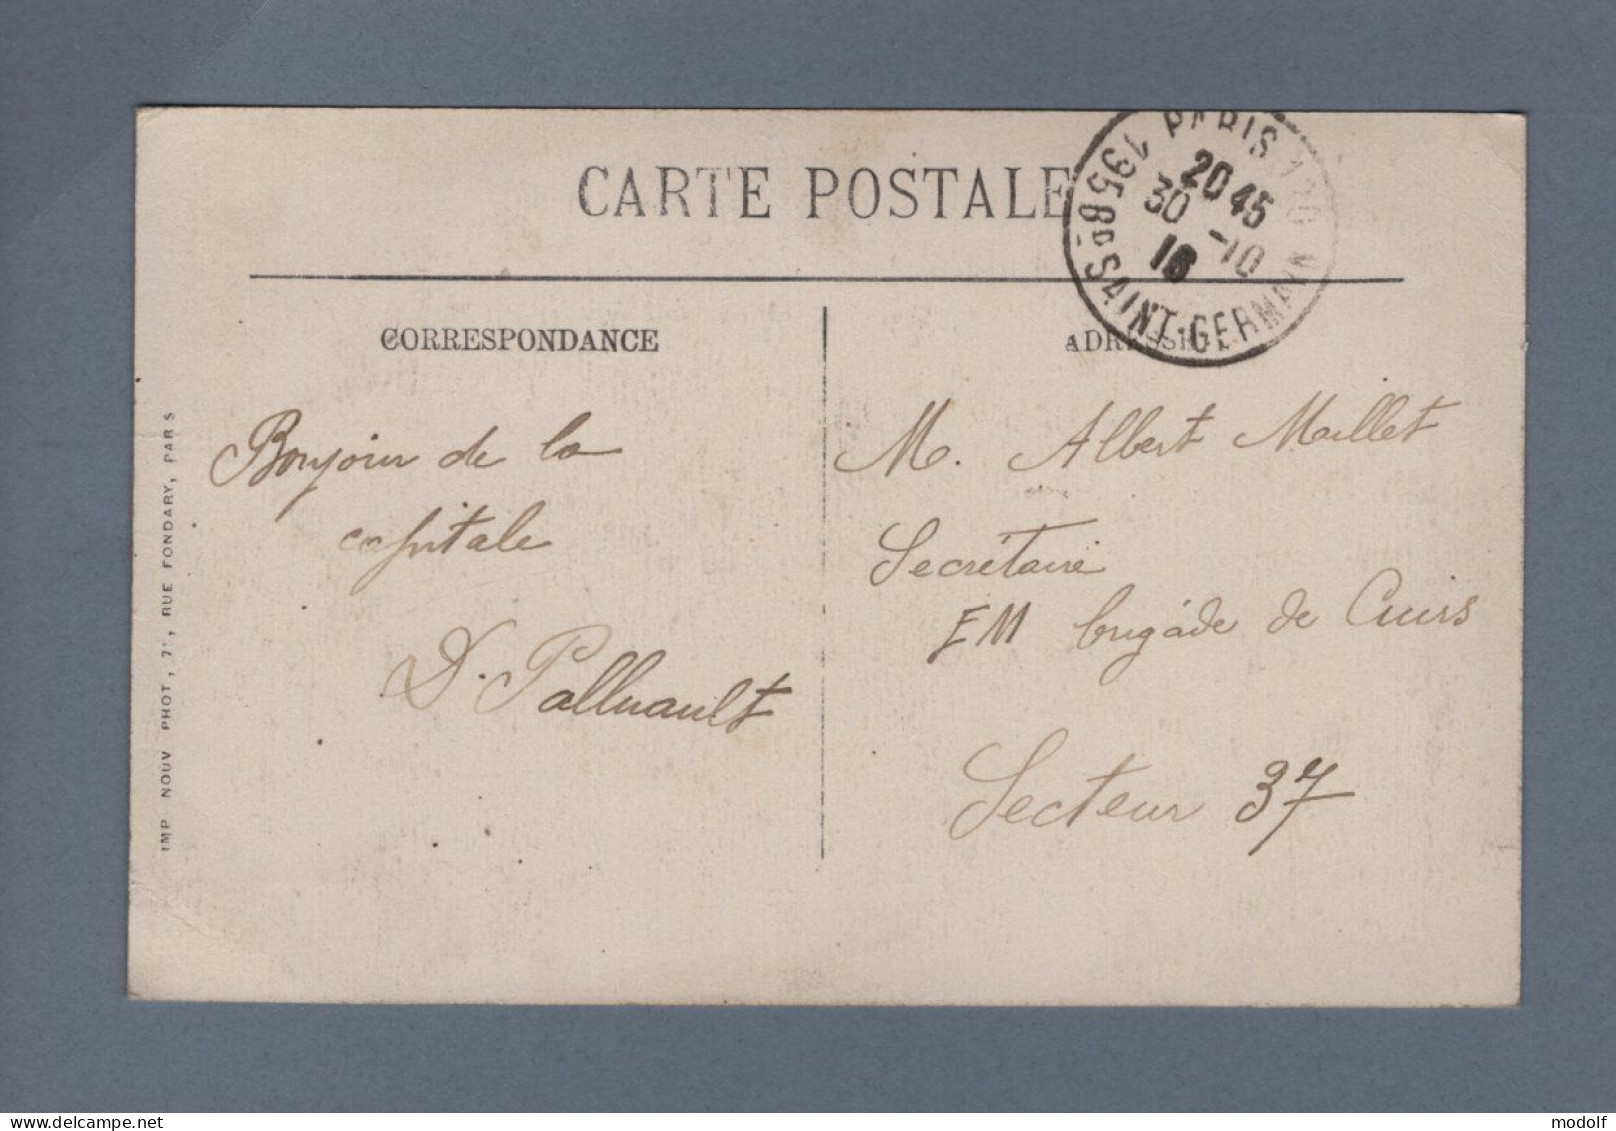 CPA - 75 - Paris - La Place De La Bastille - Animée - Circulée En 1913 - Plazas